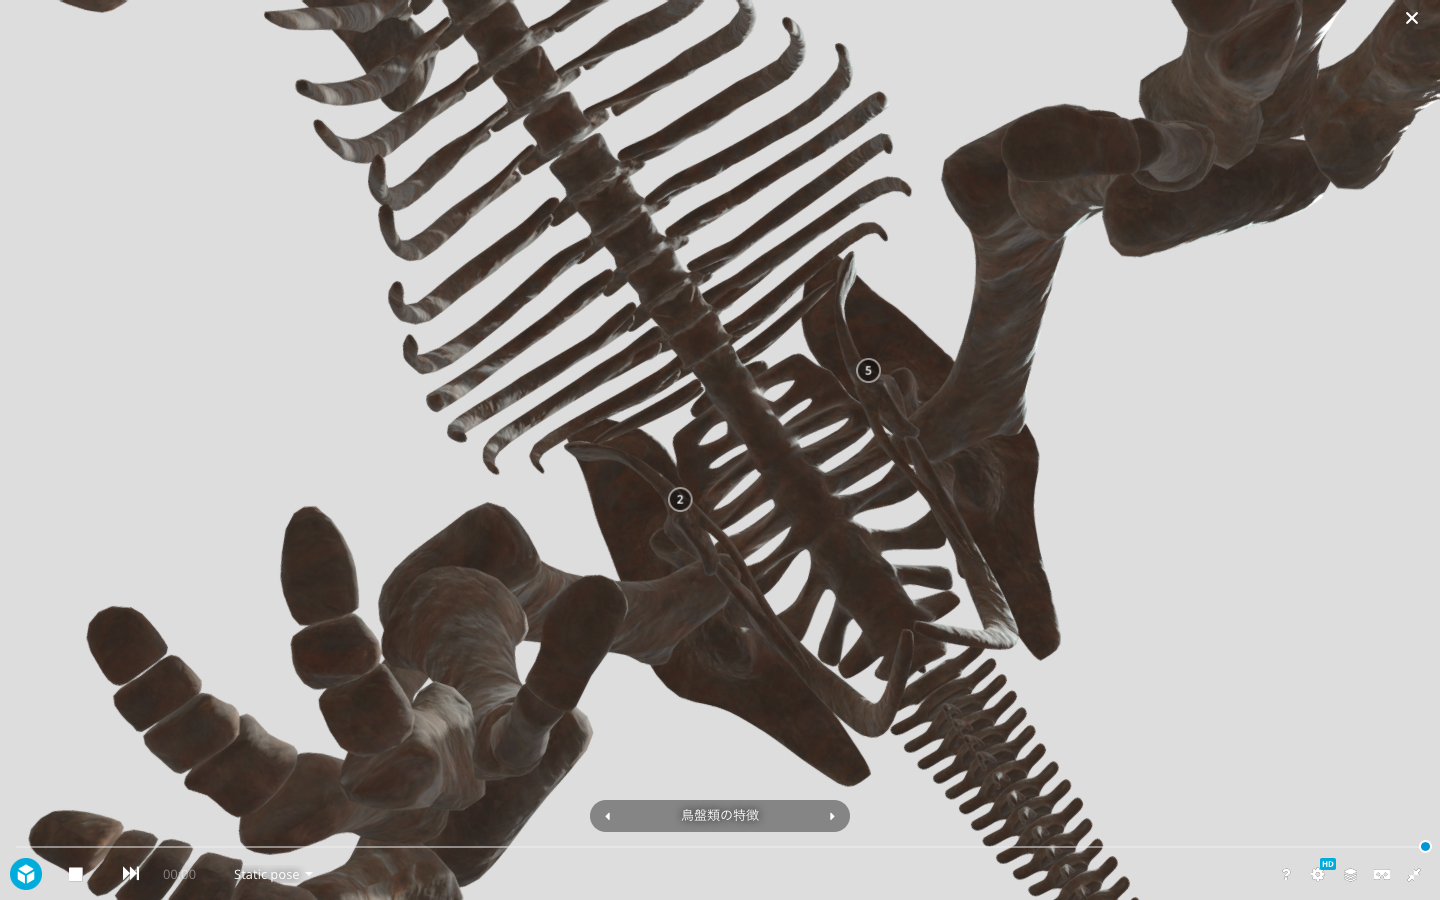 トリケラトプスの全身骨格を真下から眺める （ホームページより引用：国立科学博物館・凸版印刷株式会社）